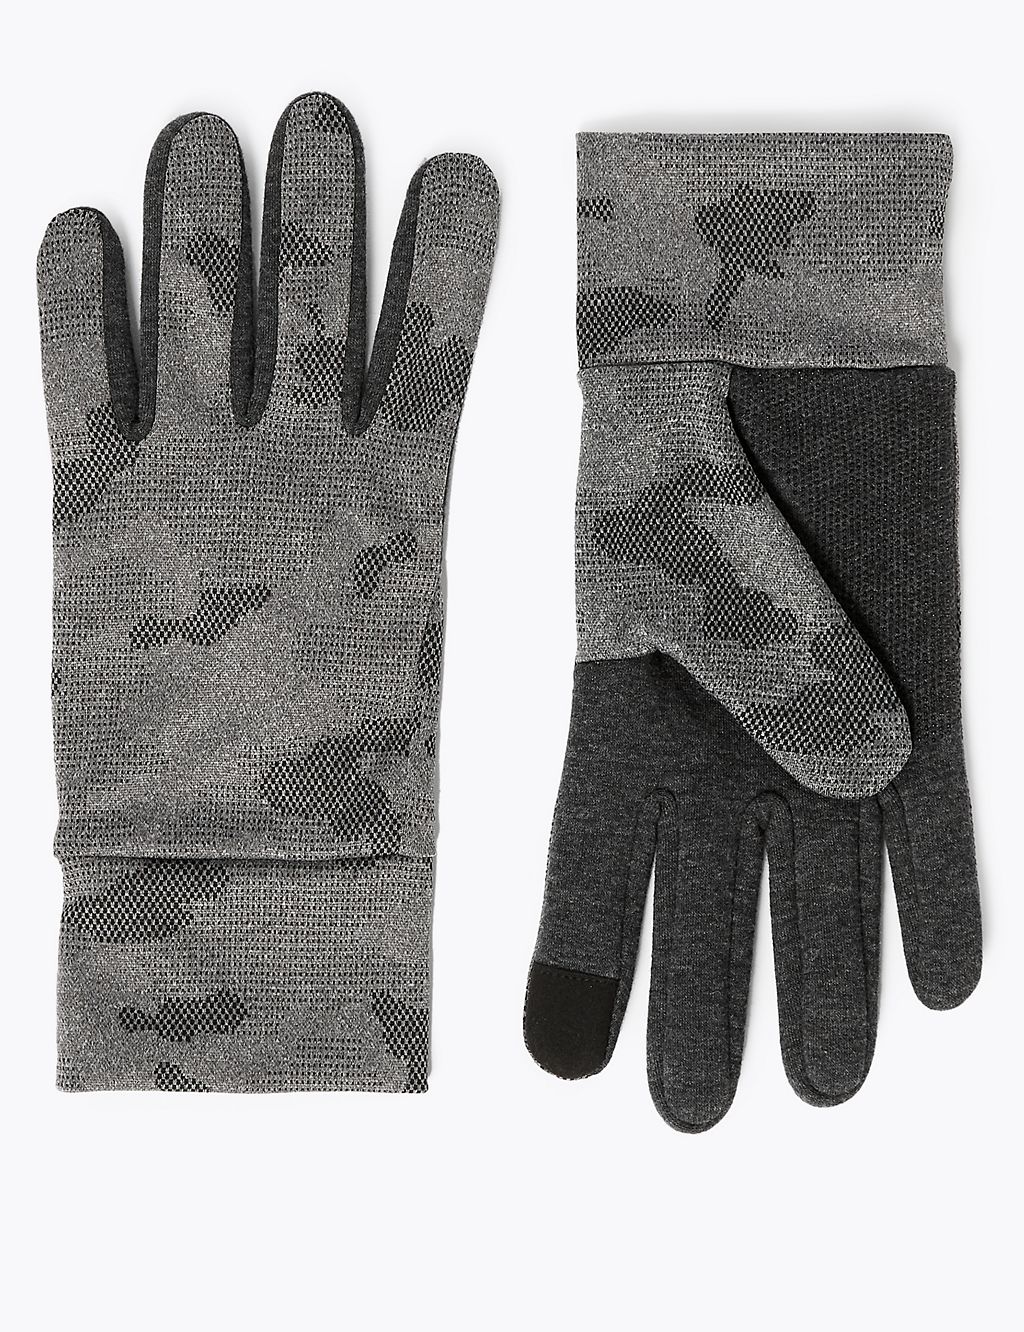 Camo Touchscreen Gloves 1 of 2